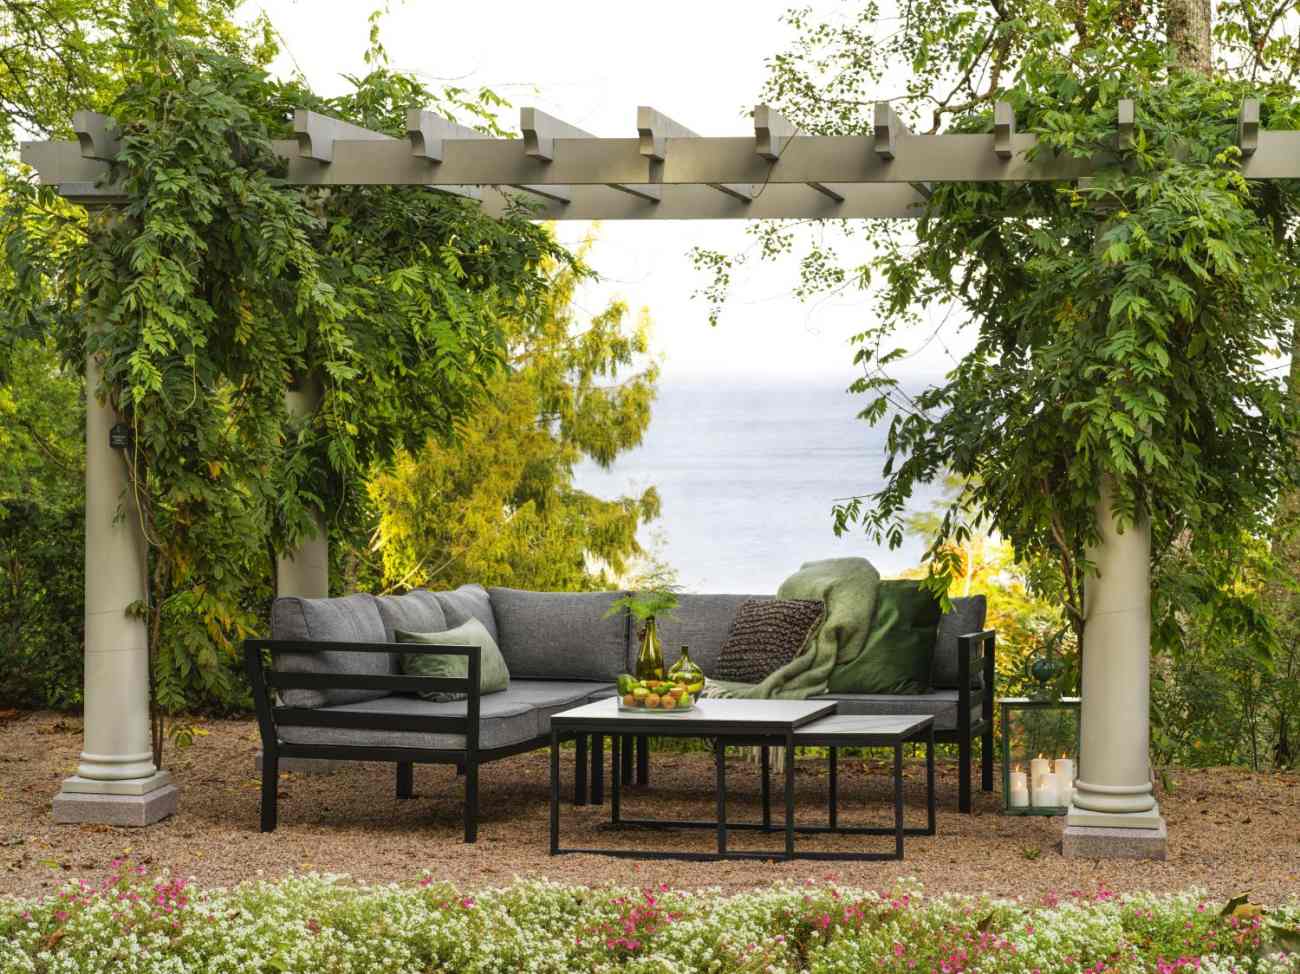 Das Gartenecksofa Weldon überzeugt mit seinem modernen Design. Gefertigt wurde er aus Stoff, welcher einen dunkelgrauen Farbton besitzt. Das Gestell ist aus Metall und hat eine schwarze Farbe. Die Sitzhöhe des Sofas beträgt 43 cm.